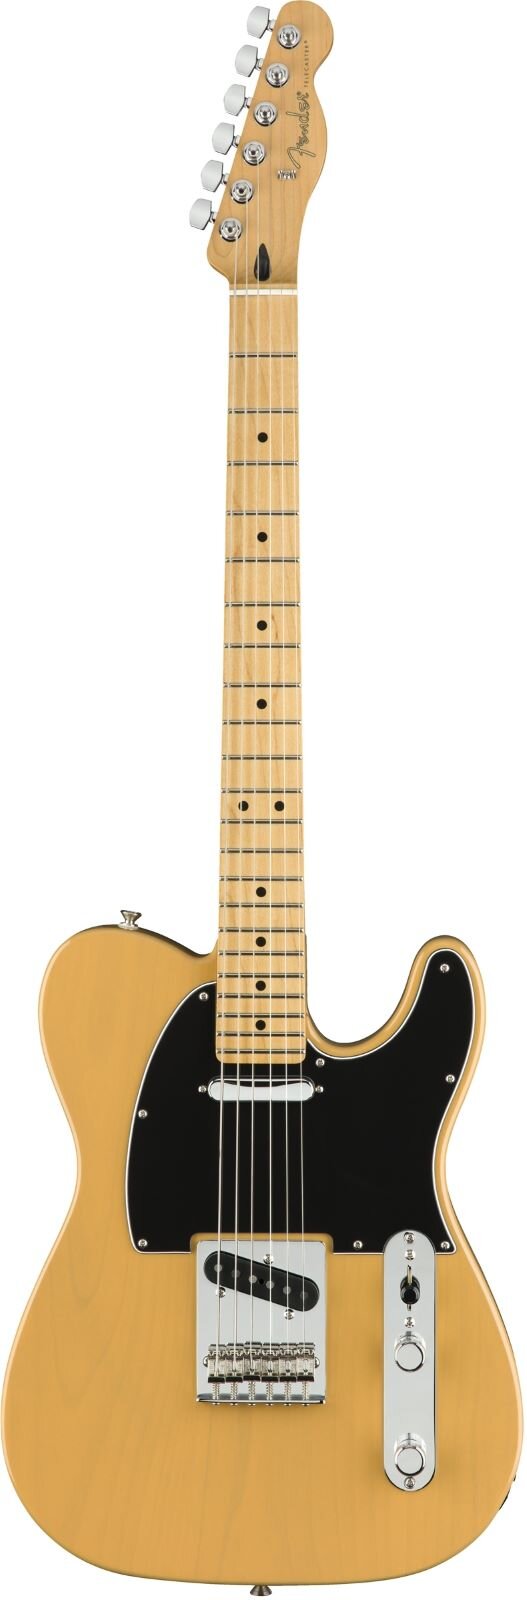 Fender Player Telecaster Ahorn Griffbrett Butterscotch Blond : photo 1